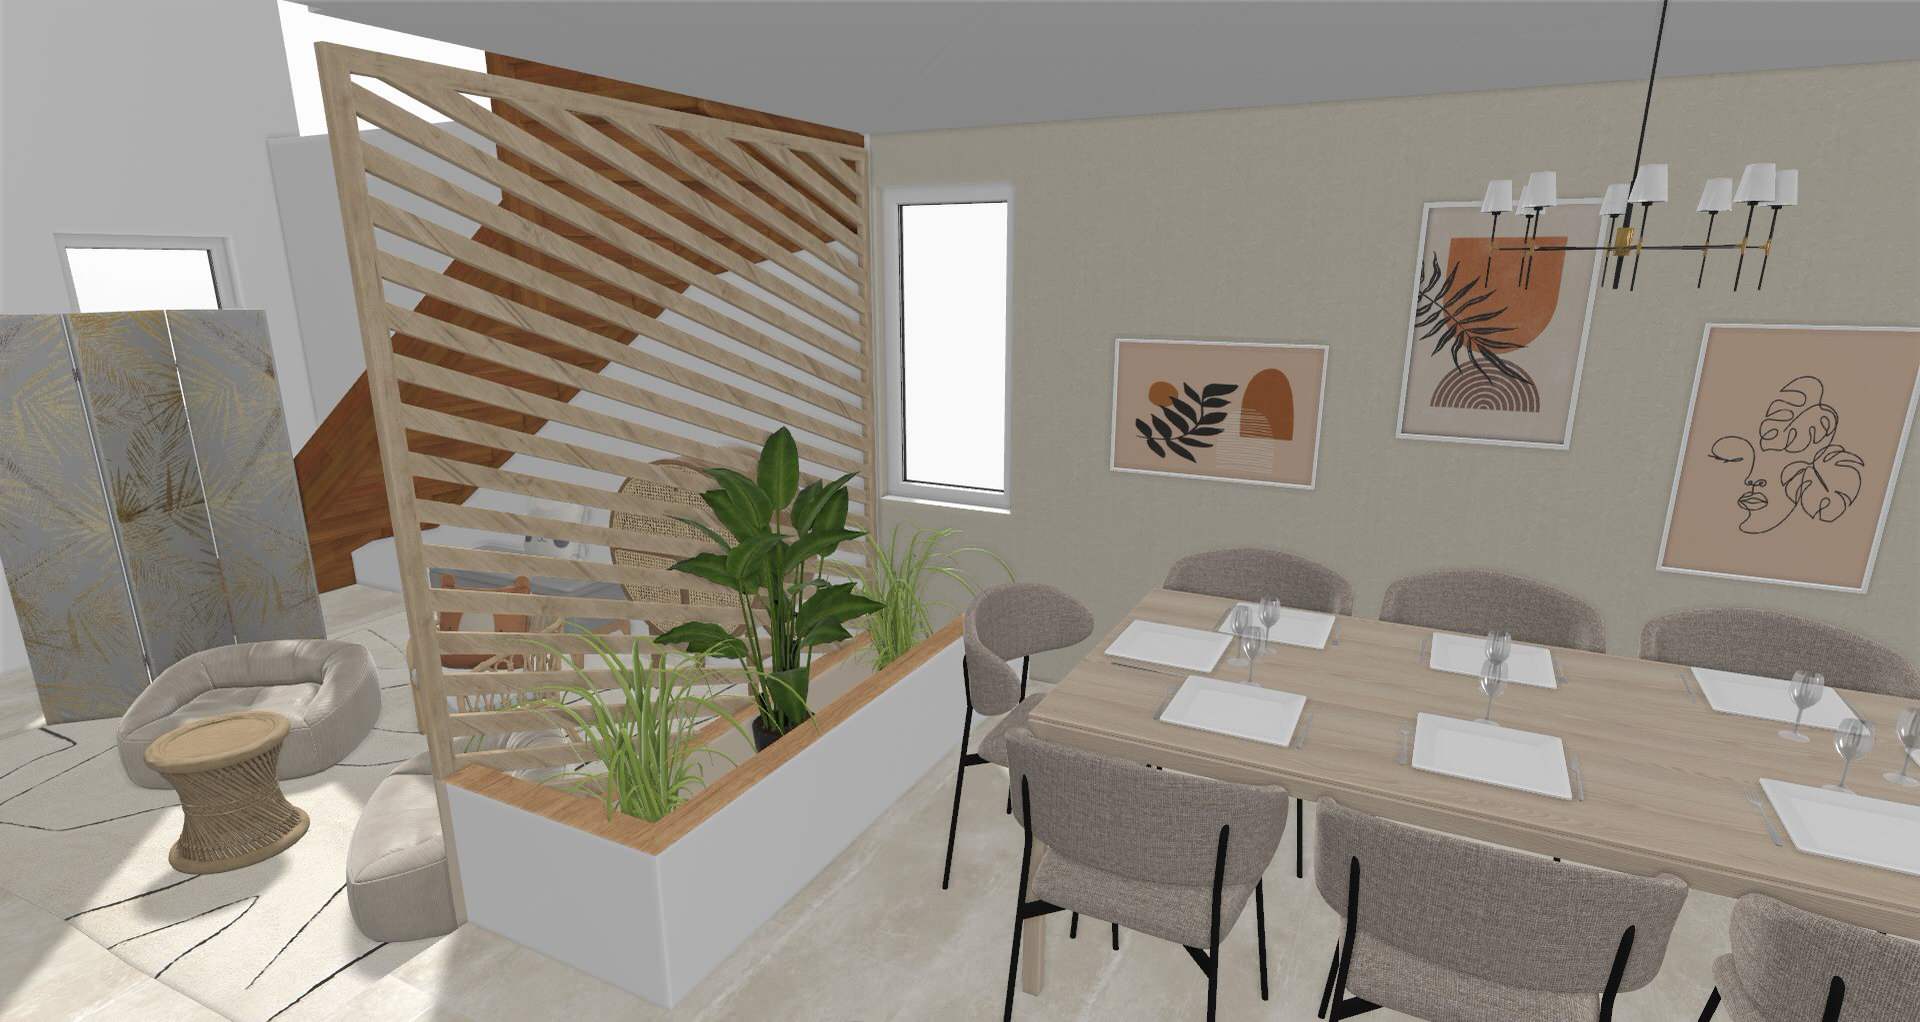 Vue 3D claustra, bac à plantes et meubles